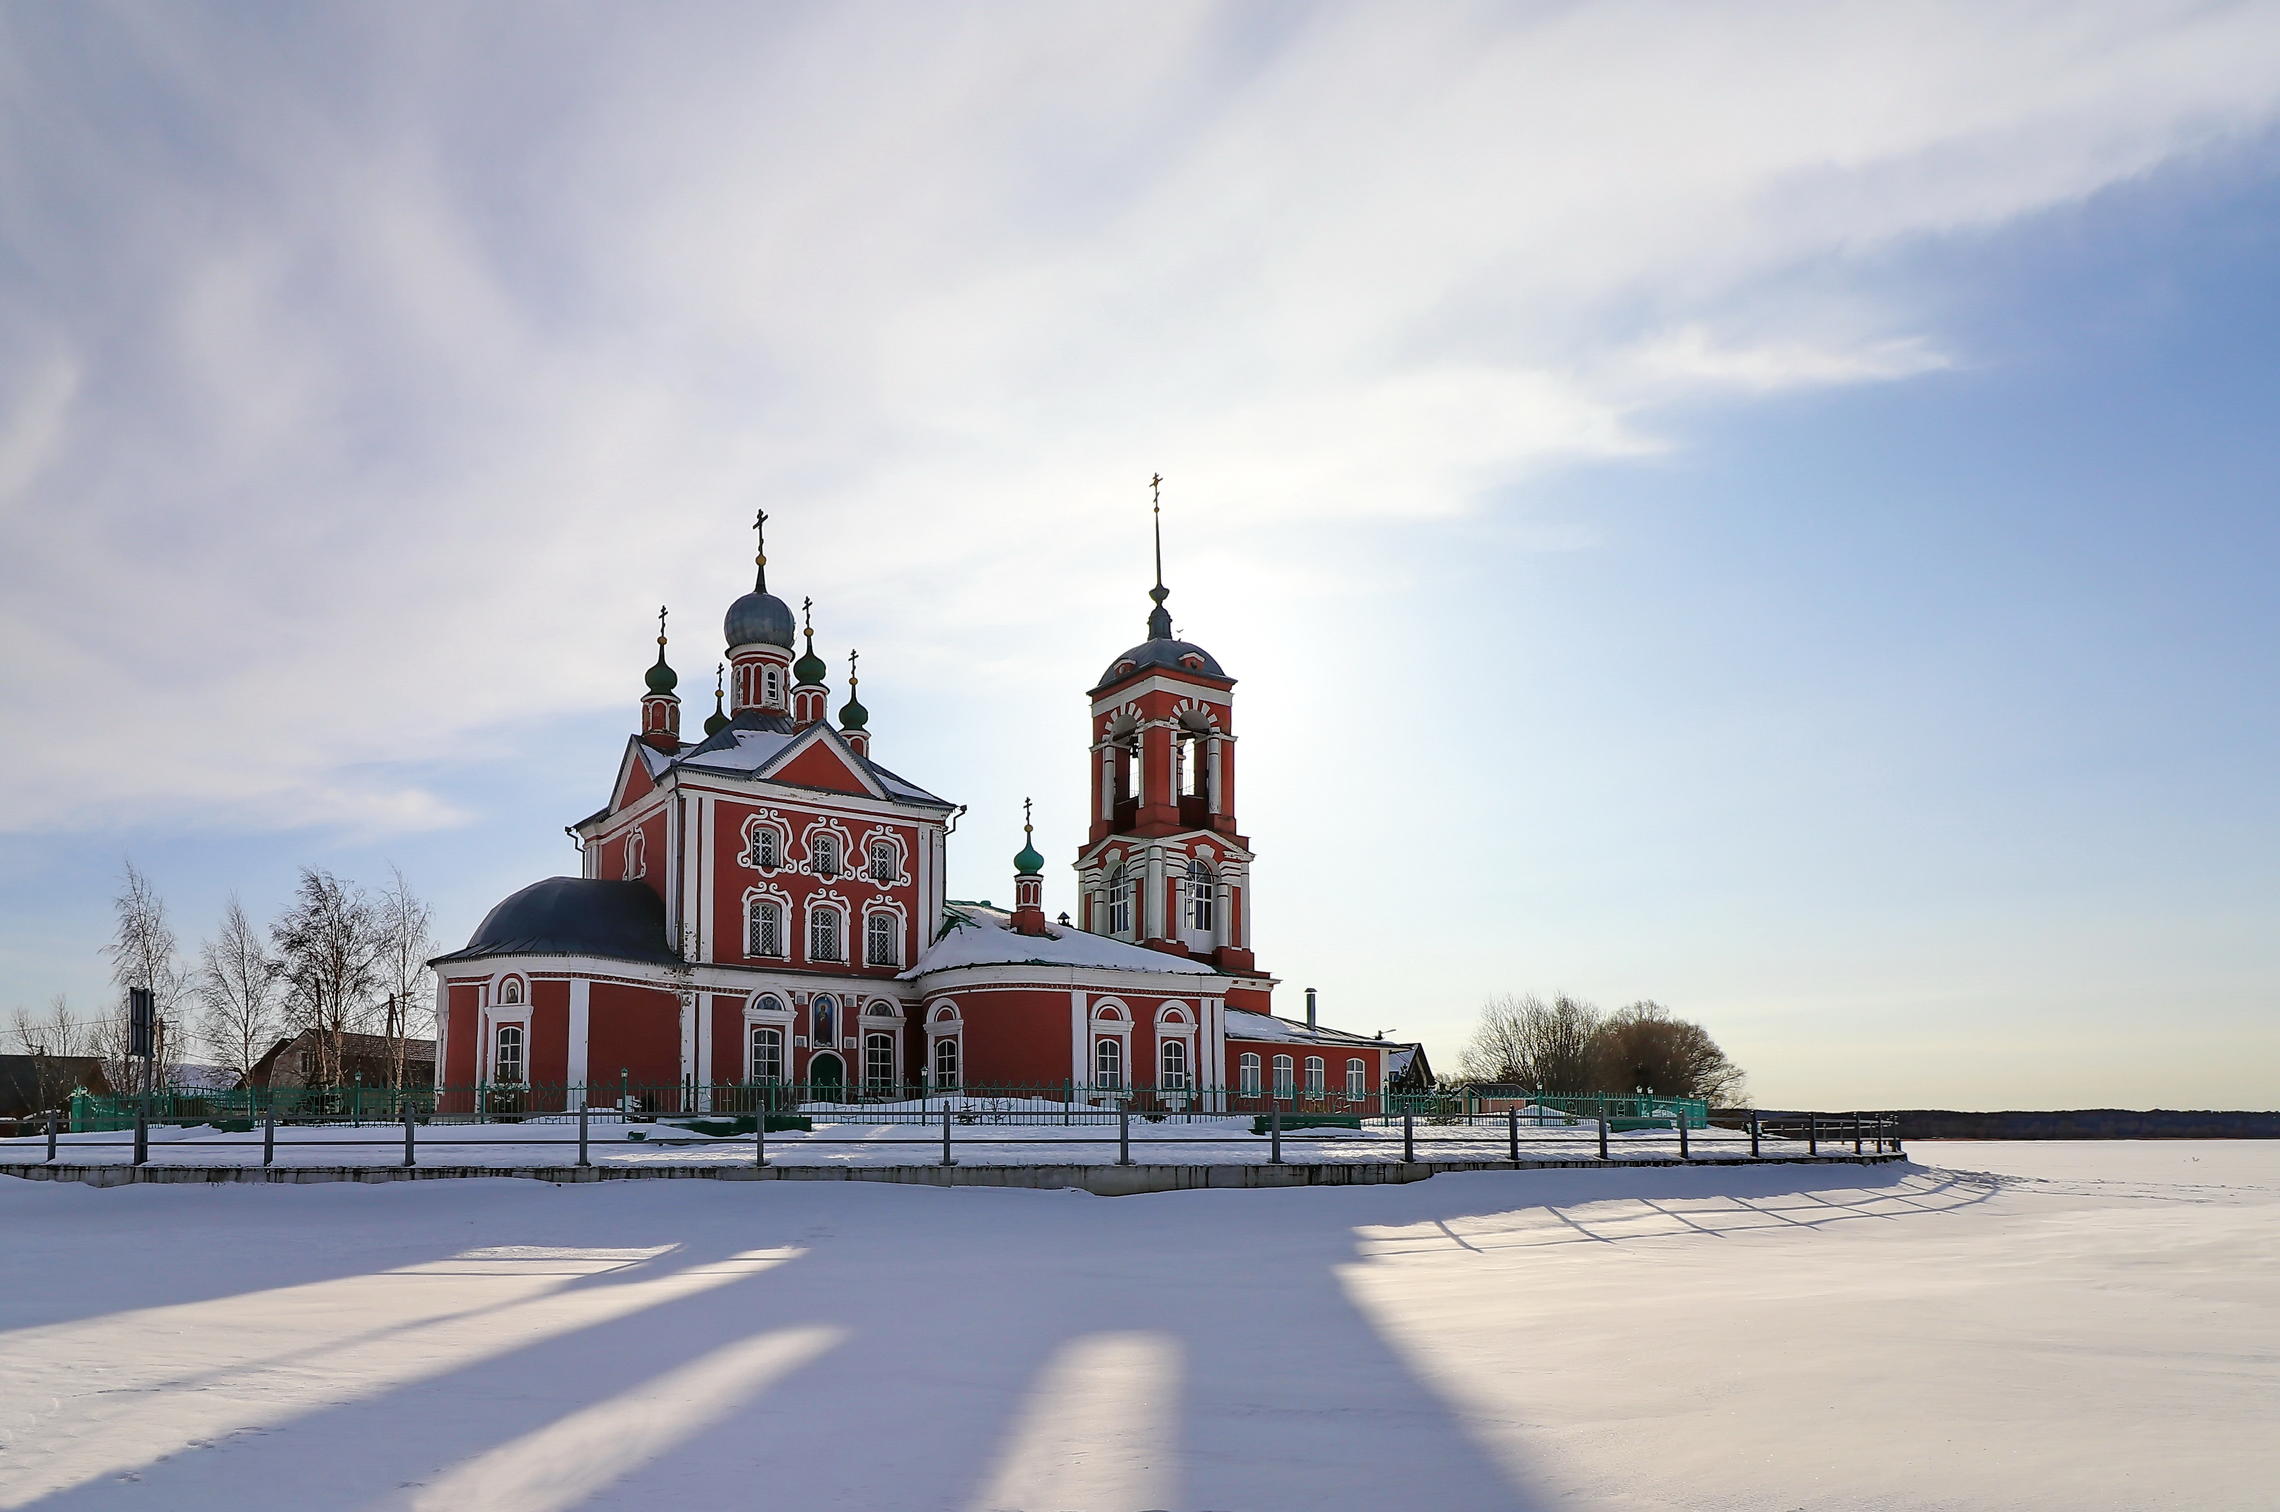 Церковь Сорока мучеников — православная церковь в городе Переславль-Залесский.